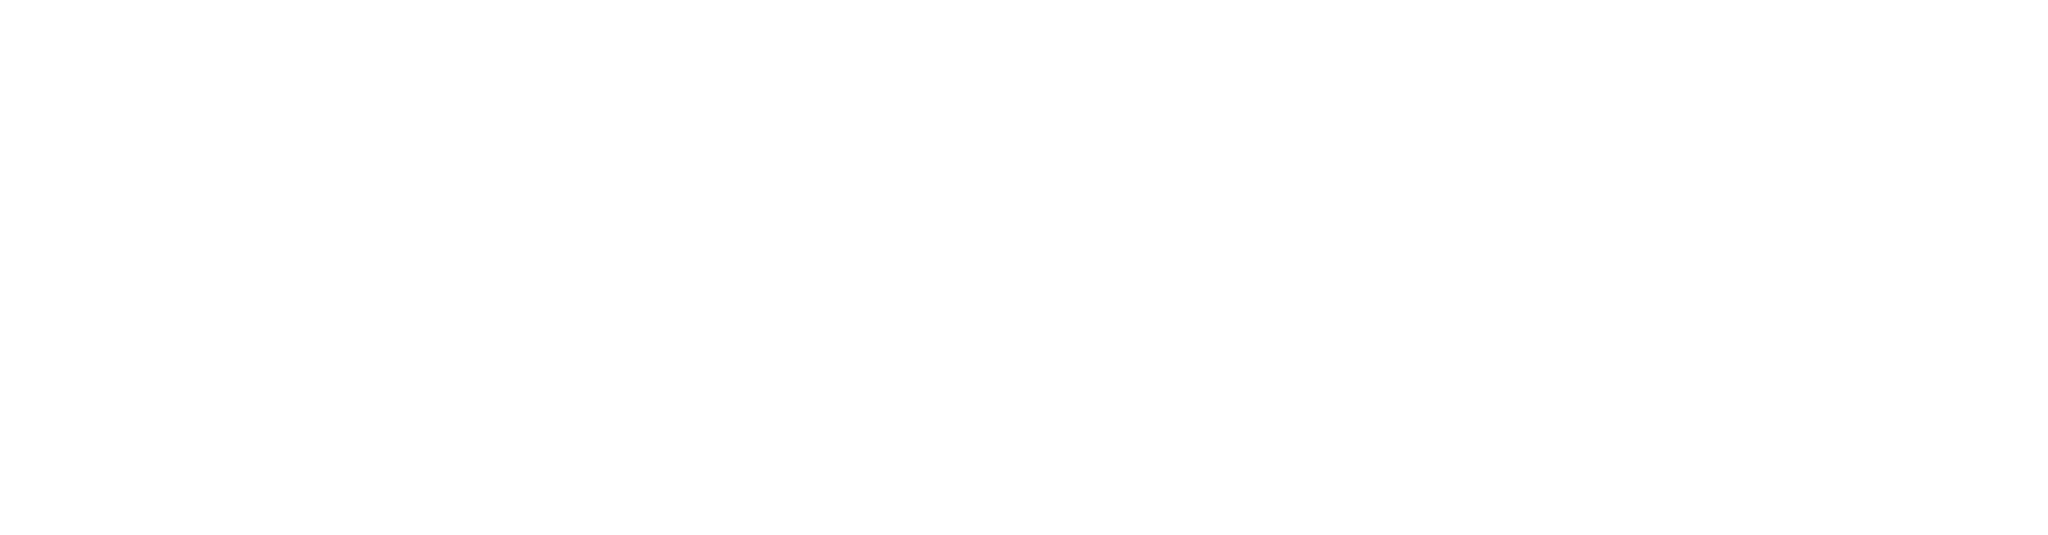 Financiado por la Union Europea NextGeneration - LTC Liteco